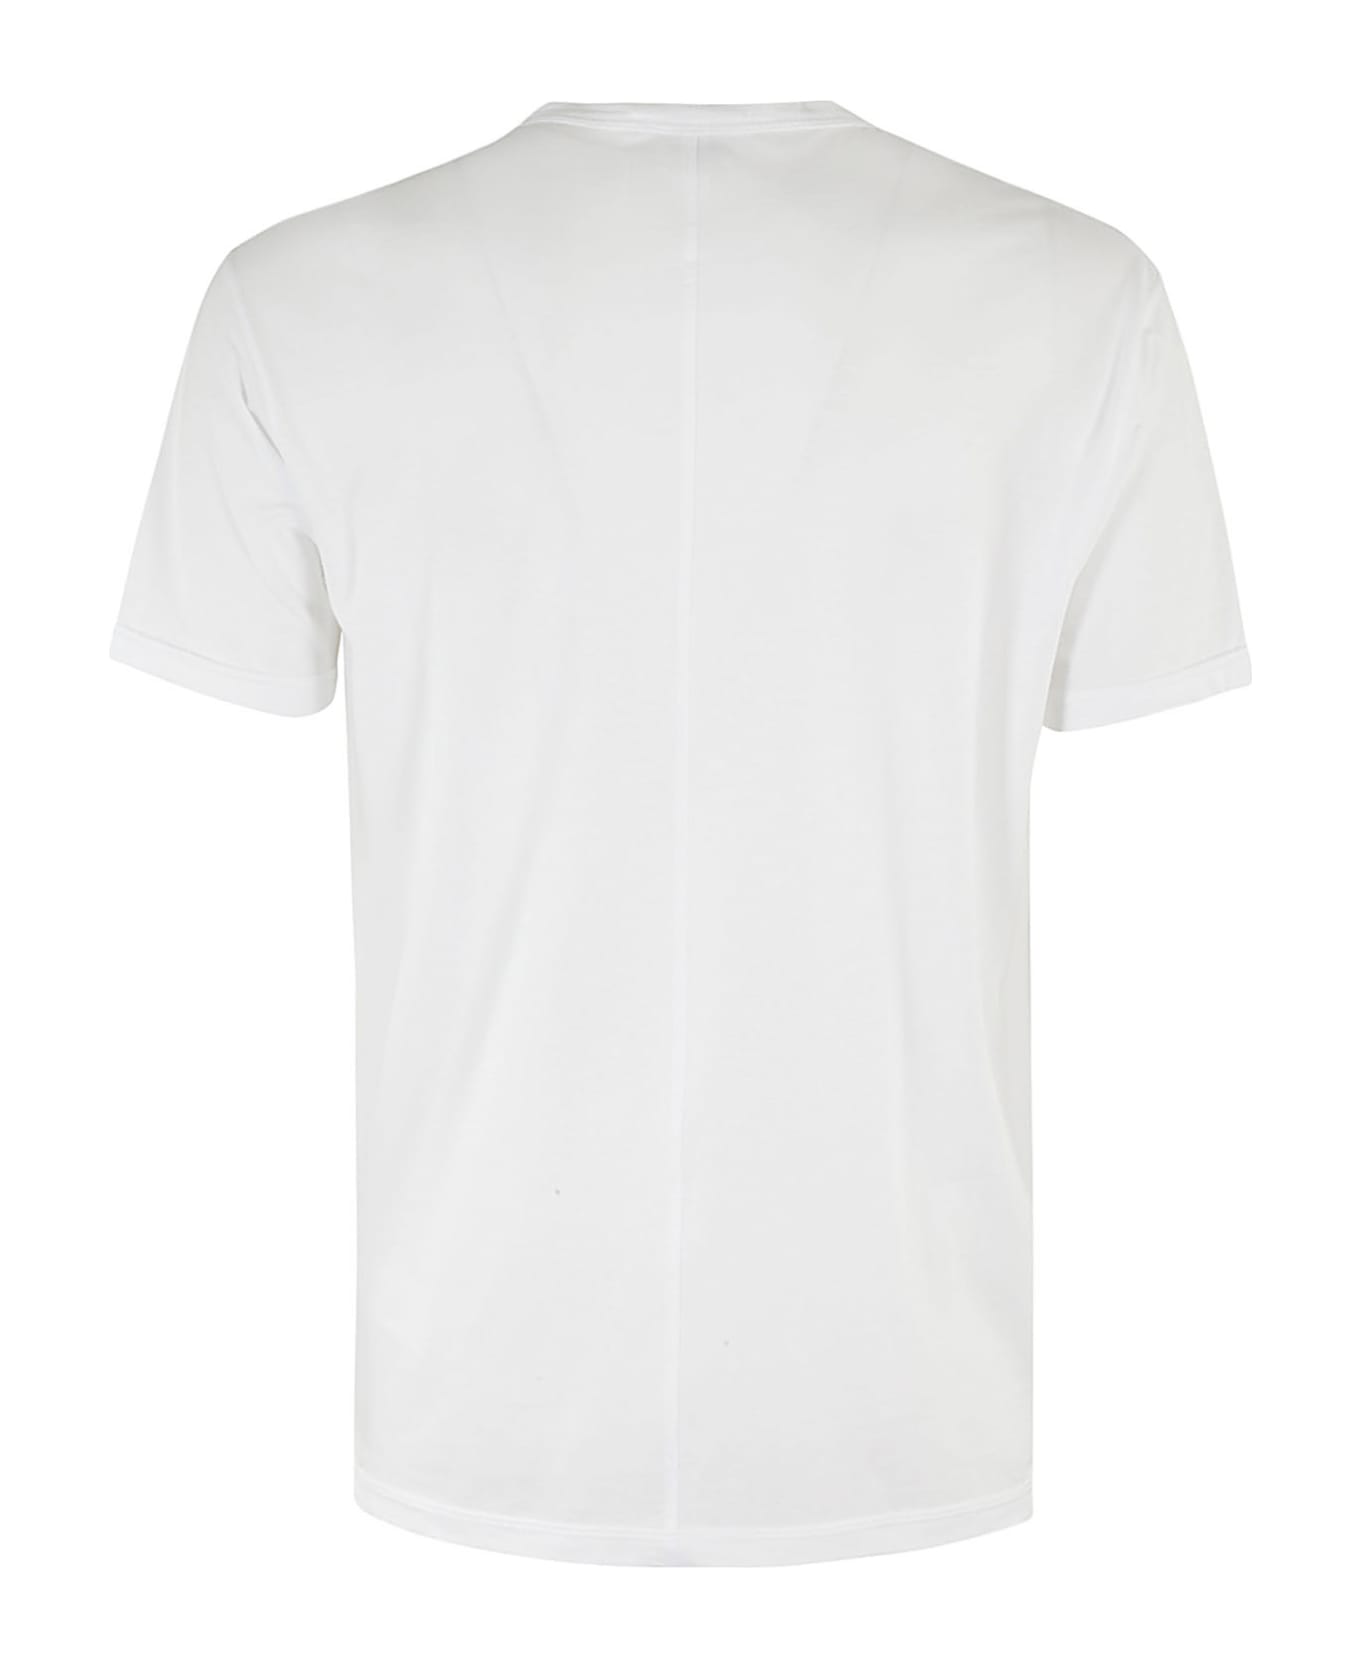 Paolo Pecora T Shirt Jersey - Bianco Ottico